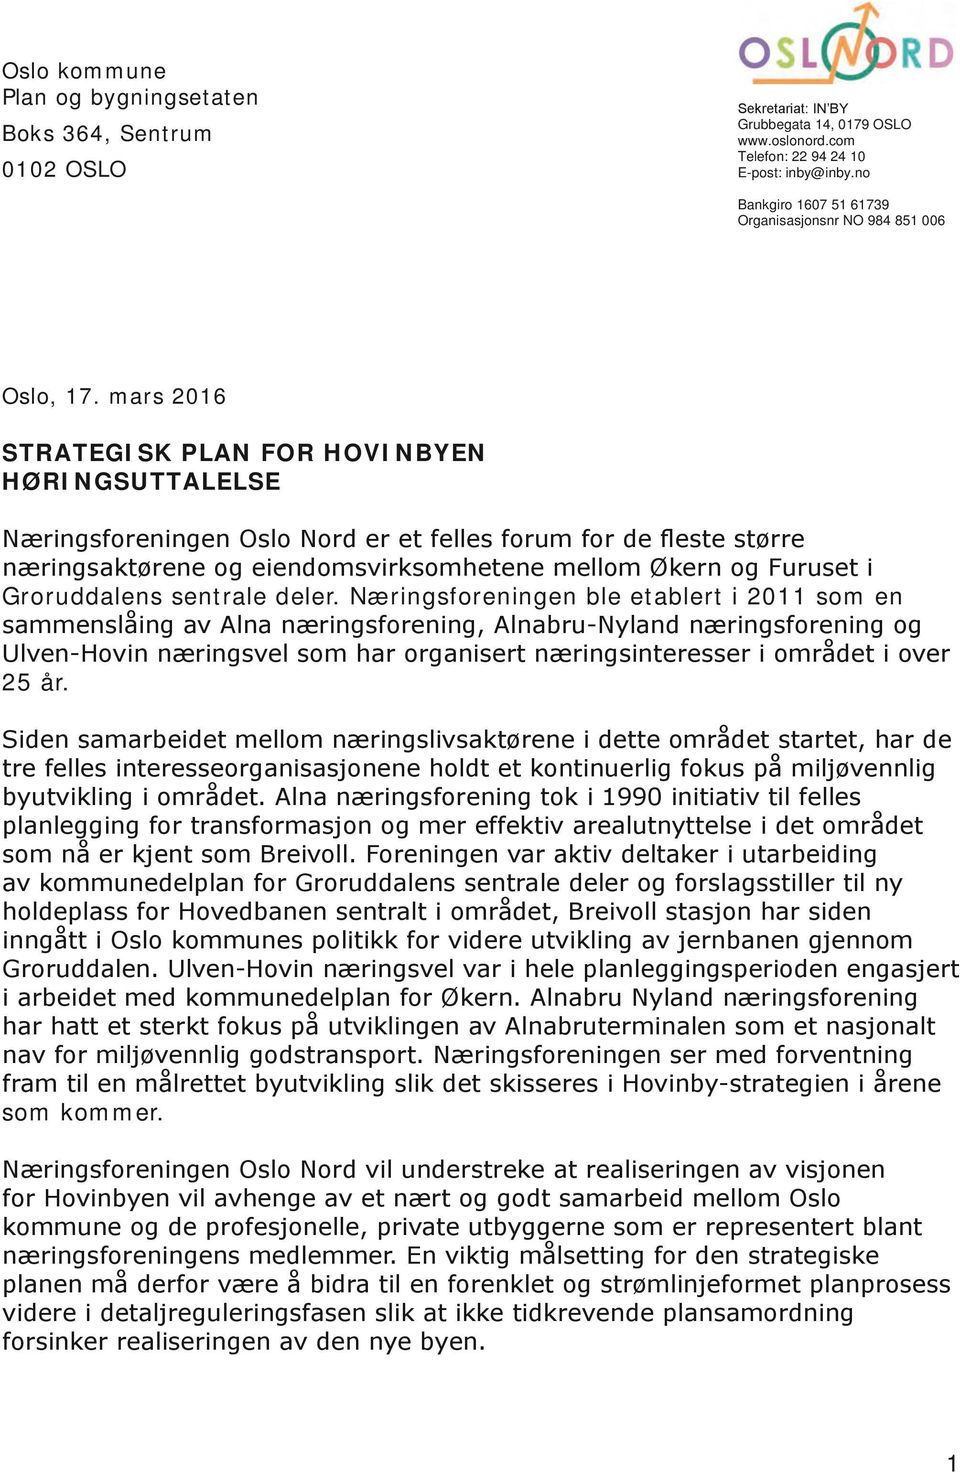 mars 2016 SRAEGISK PLAN FOR HOVINBY HØRINGSUALELSE Næringsforeningen Oslo Nord er et felles forum for de fleste større næringsaktørene og eiendomsvirksomhetene mellom Økern og Furuset i Groruddalens